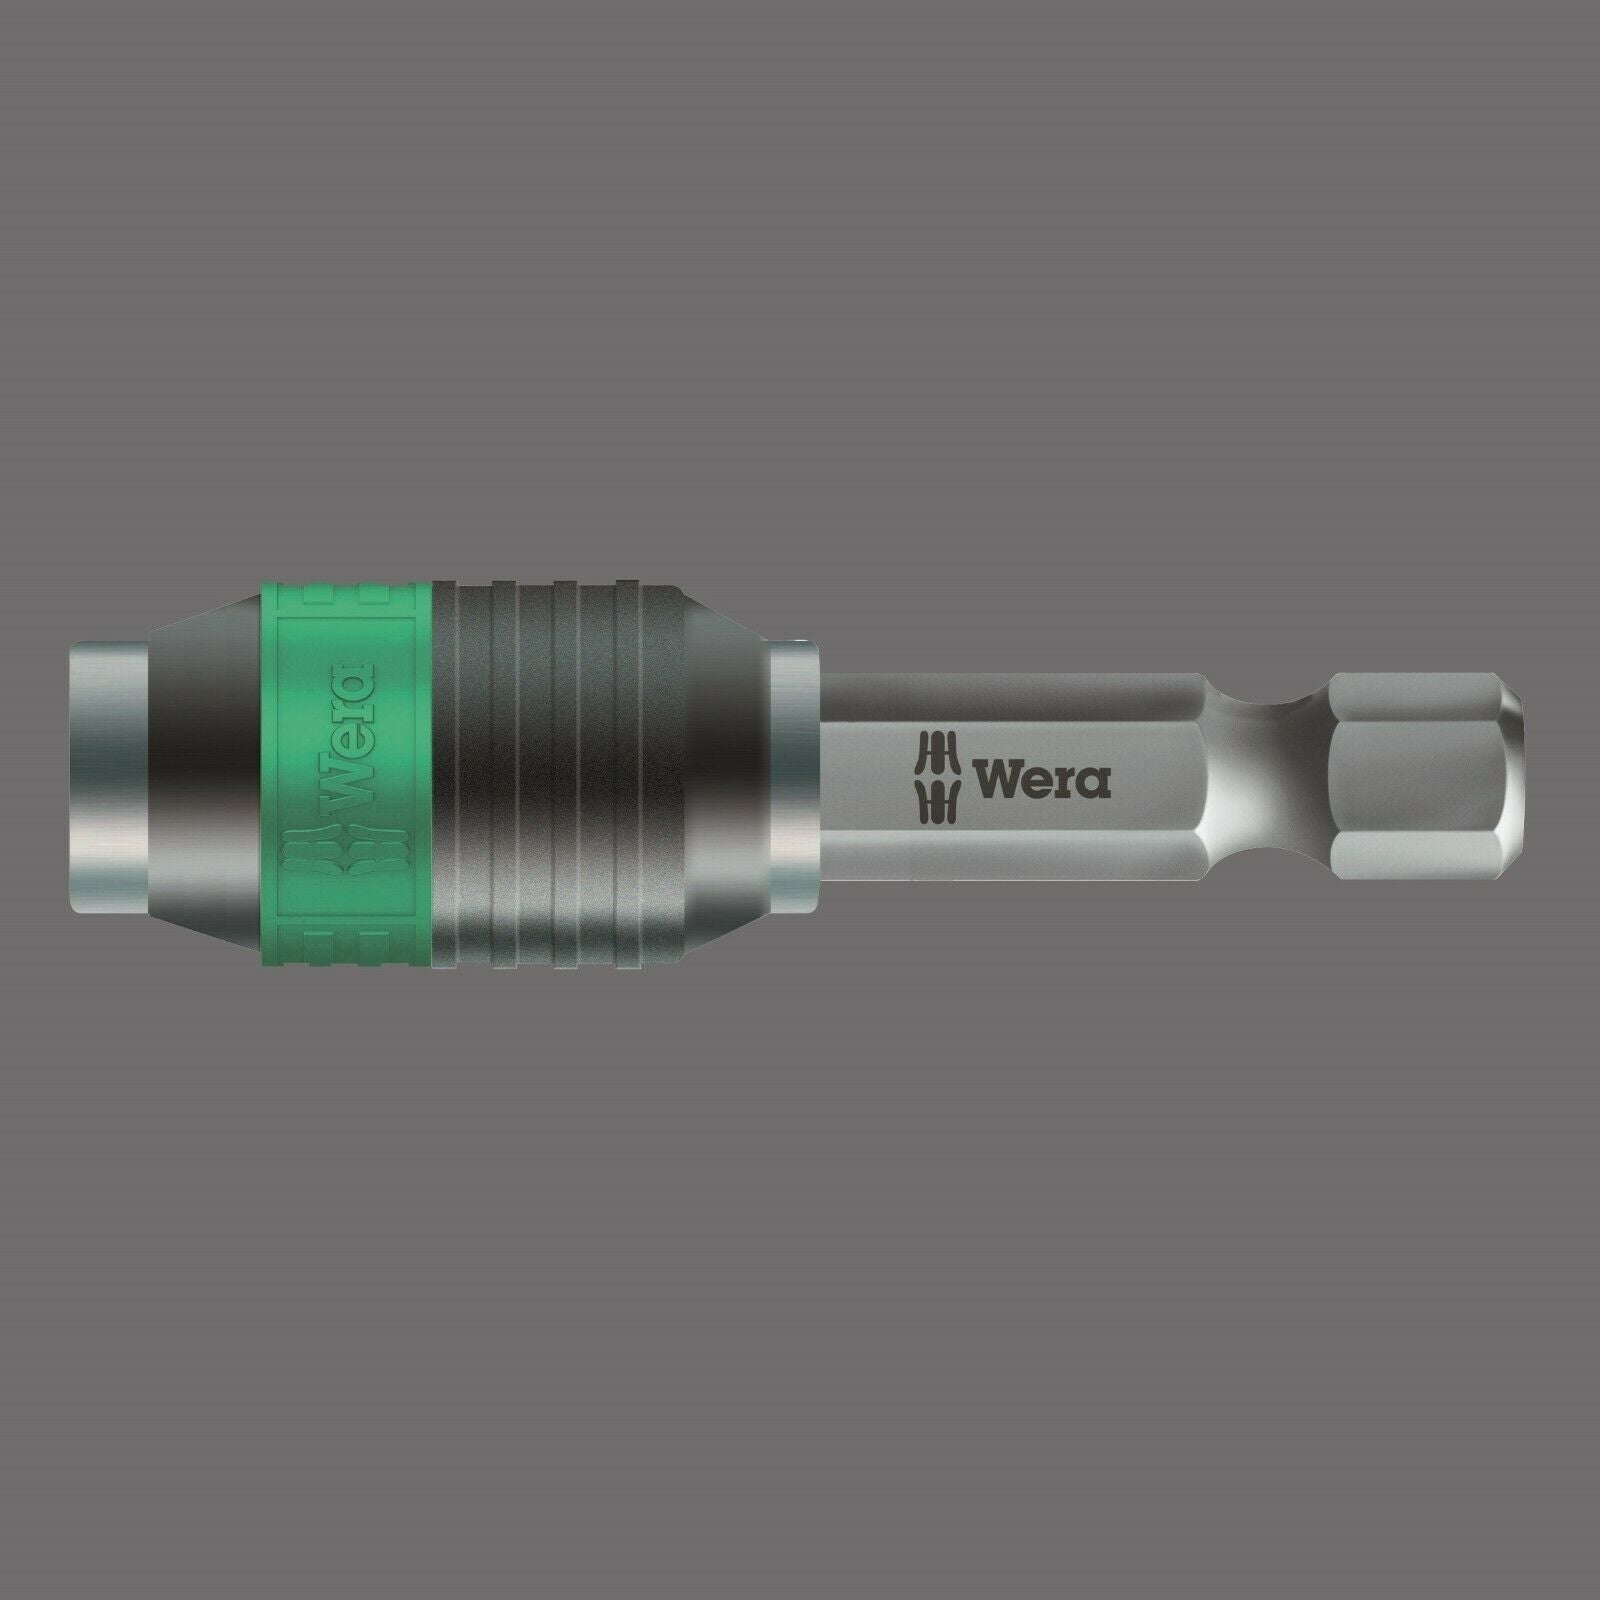 wera 844/7 thread tap countersink drill bit set 7 piece 05104654001